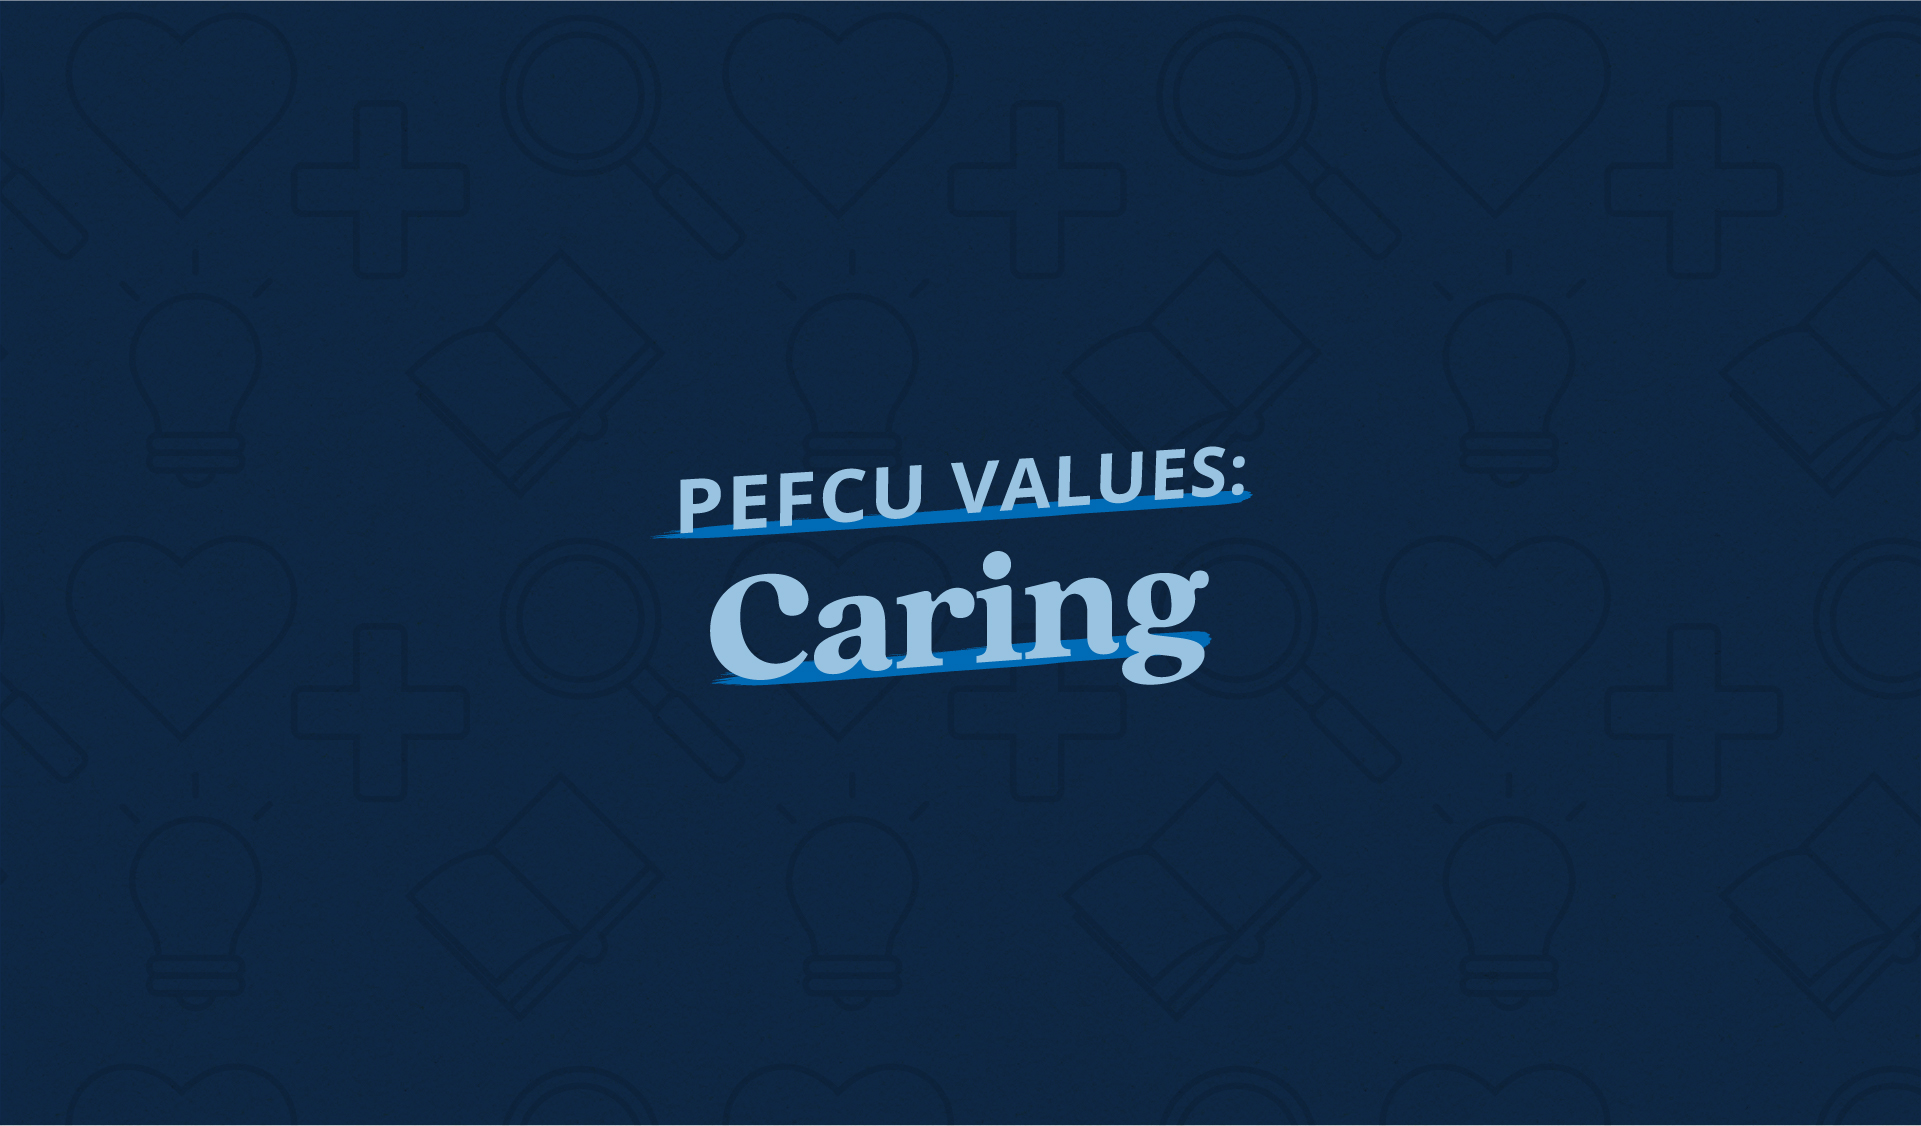 PEFCU Values: Caring